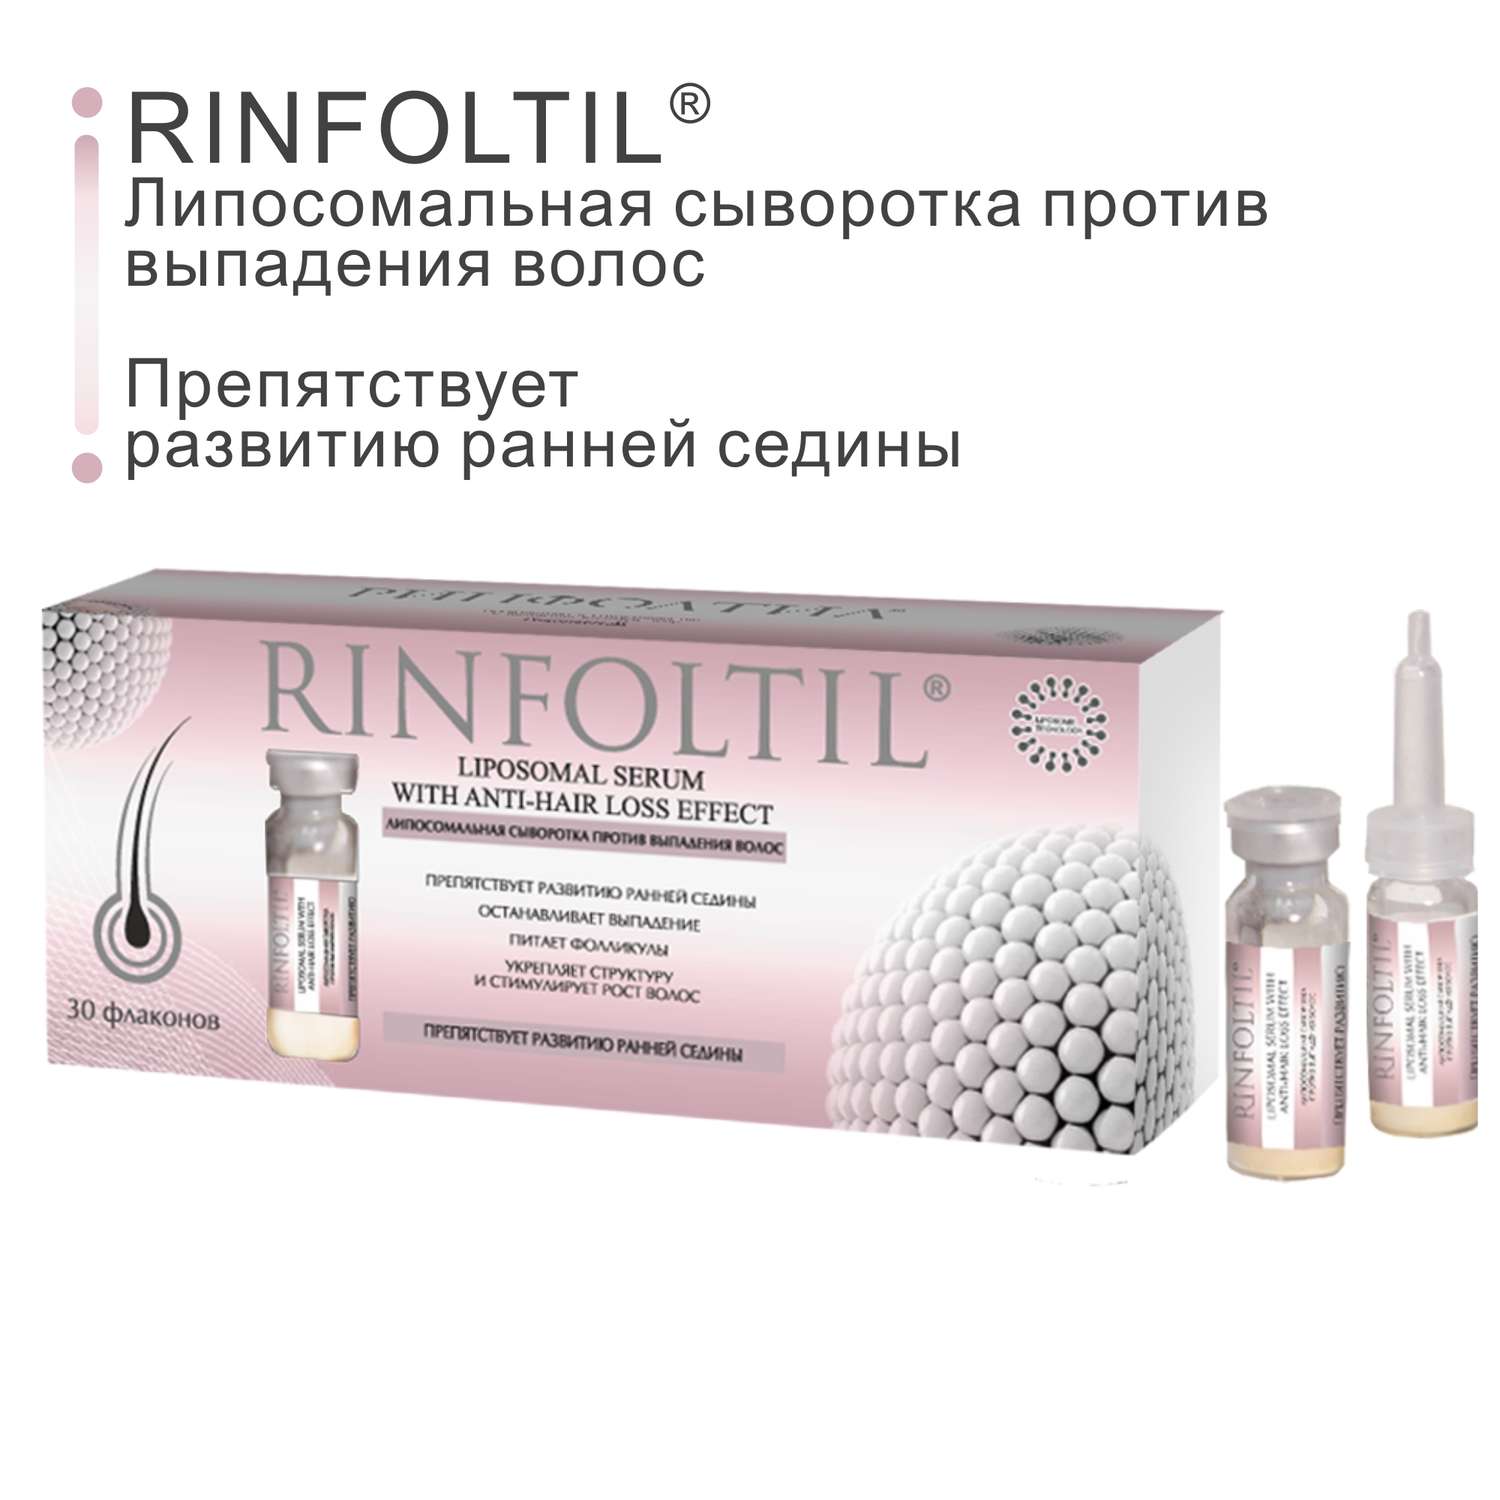 Сыворотка Rinfoltil Липосомальная против выпадения волос. Препятствует развитию ранней седины - фото 2